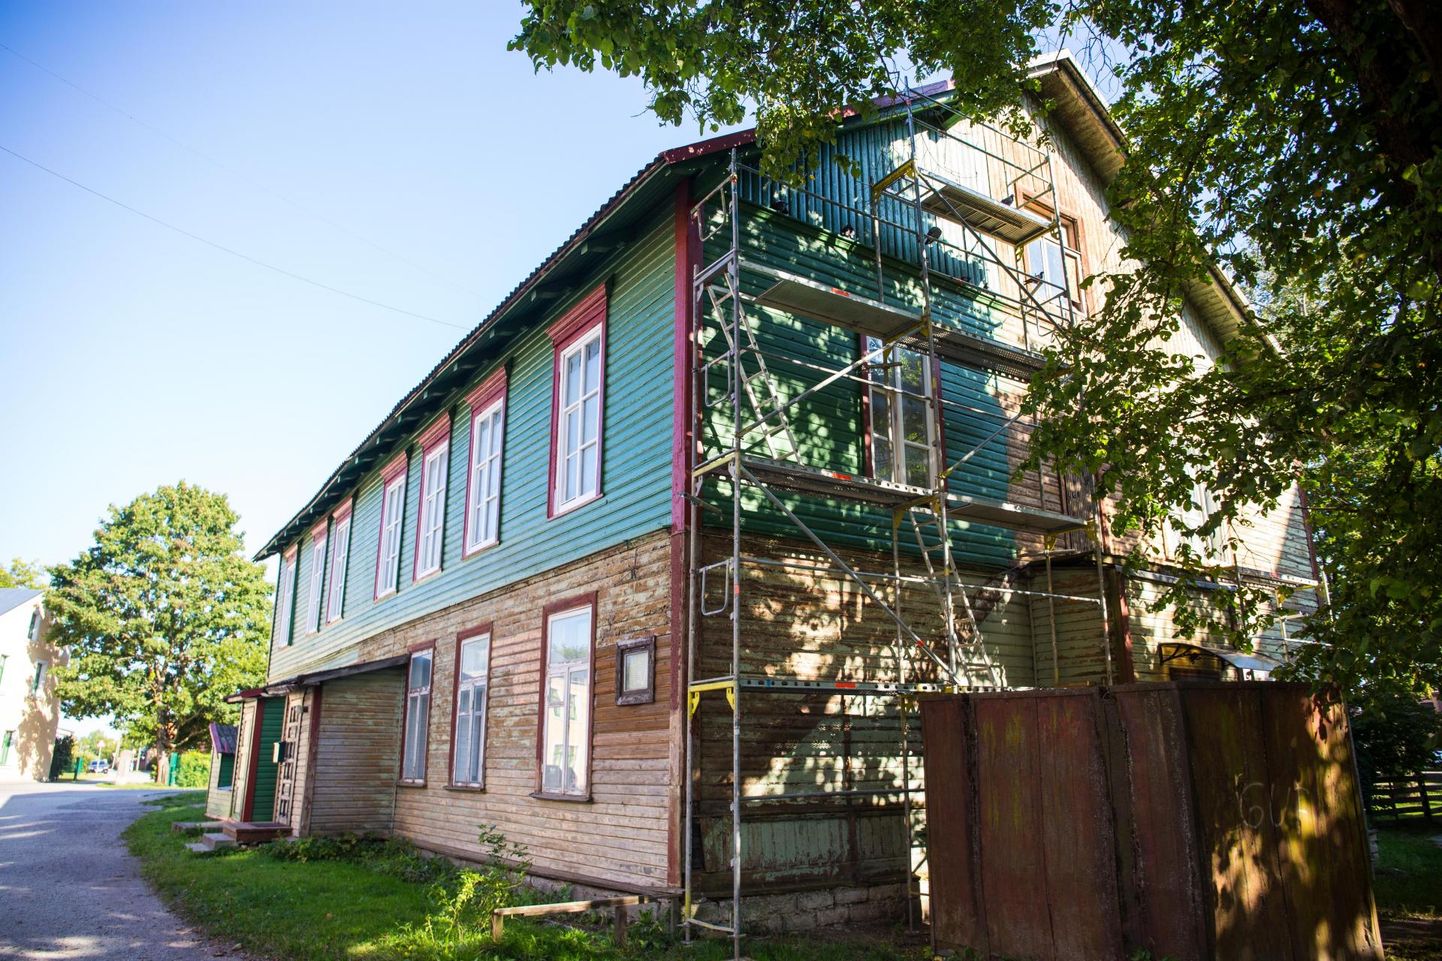 Tapal aadressil Lai 1 saab uue värvikatte maja, mis suure tõenäosusega on linna vanim säilinud hoone.